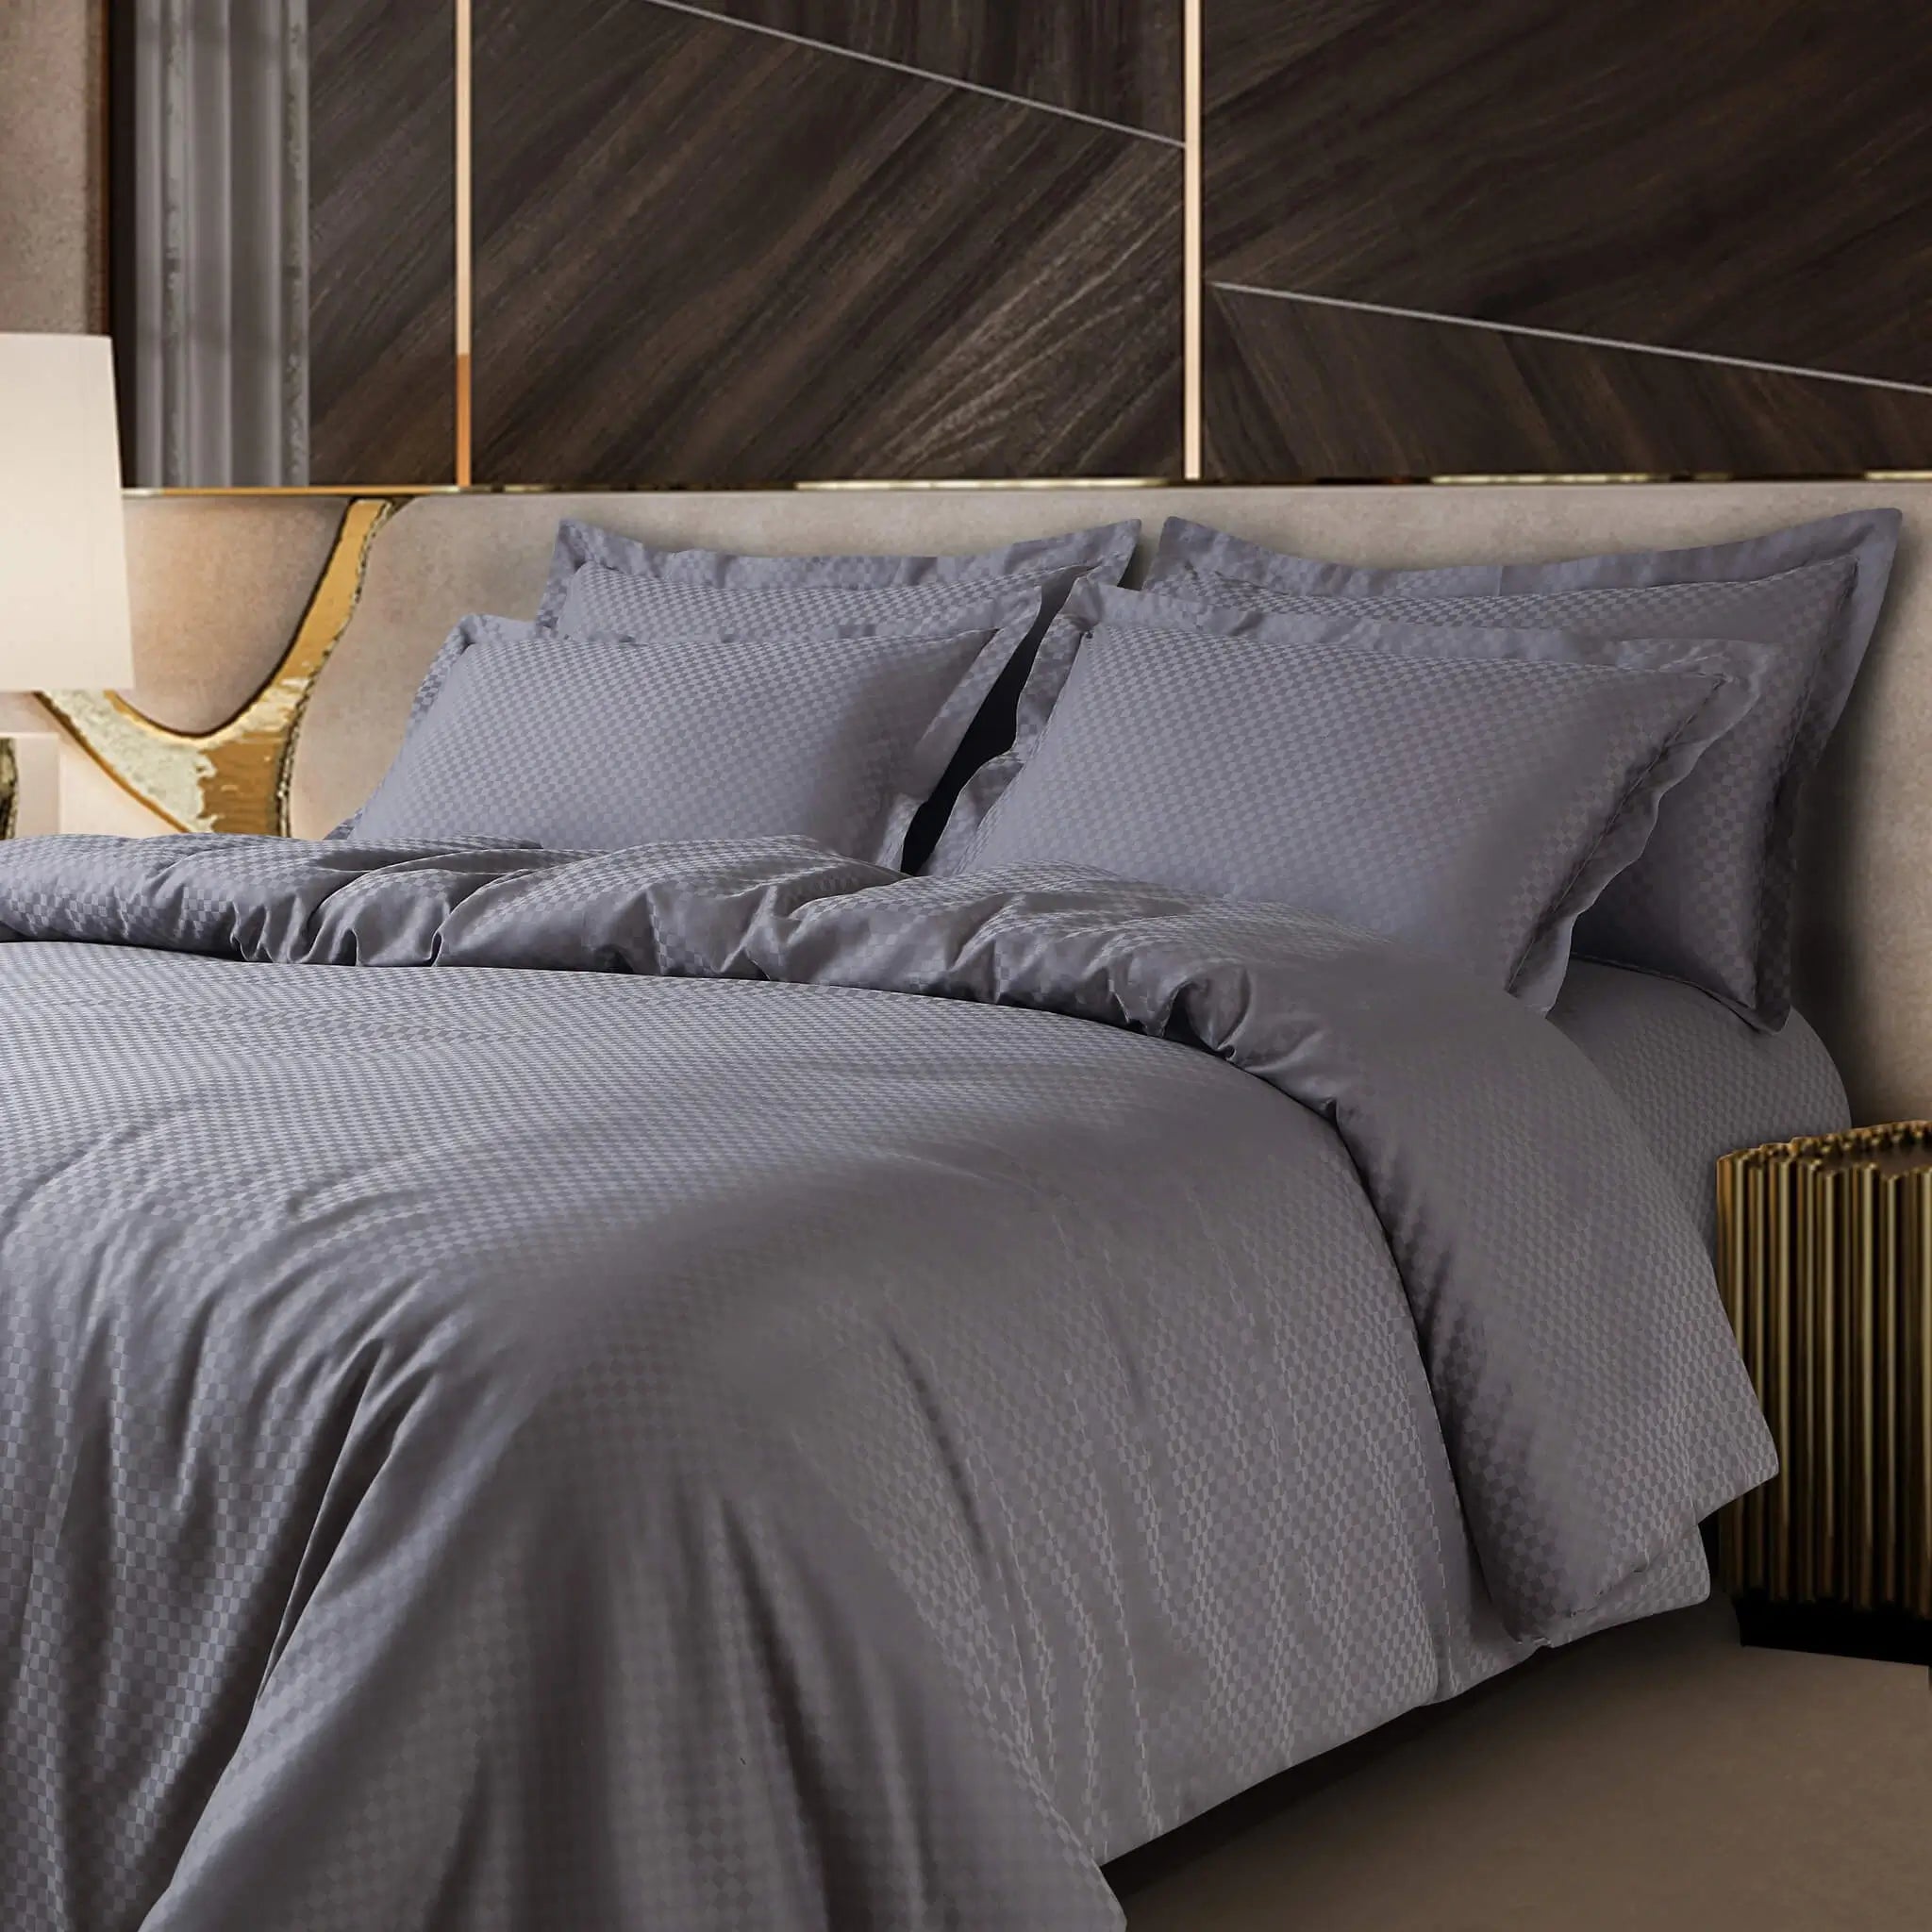 Malako Lyon Jacquard Grey Checks 450 TC 100% Cotton King Size Bed Sheet - MALAKO